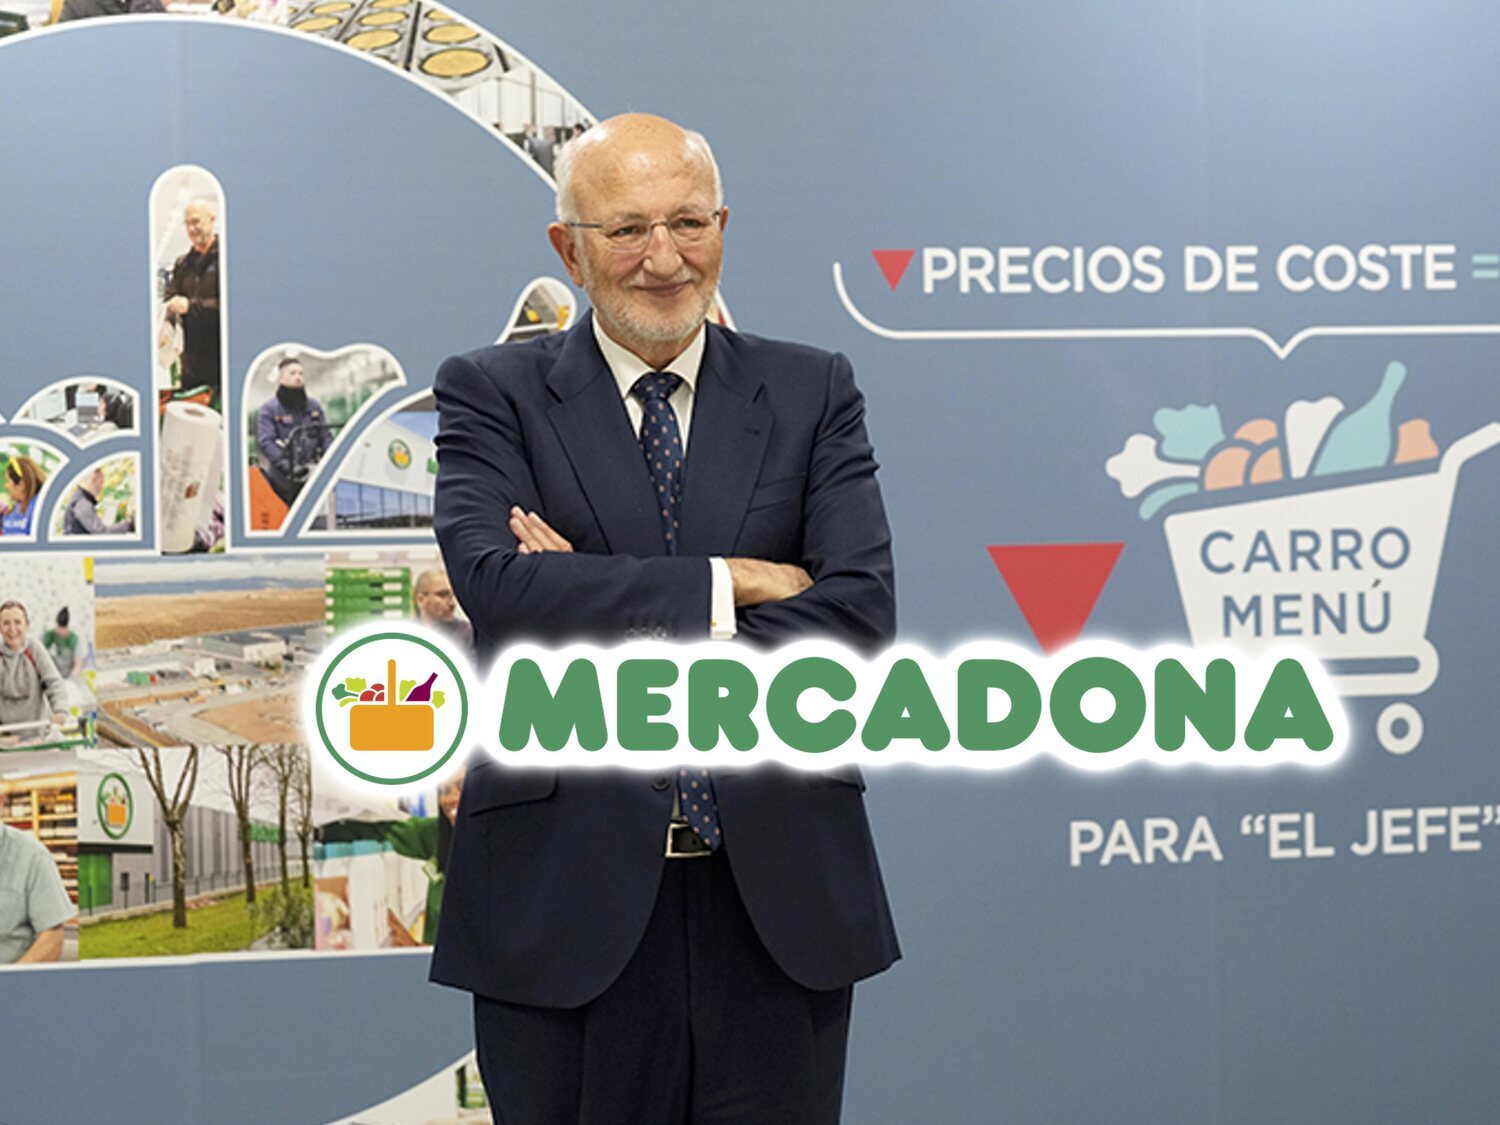 El presidente de Mercadona, contra la "división" entre españoles: "En Portugal ralentizaríamos inversiones"